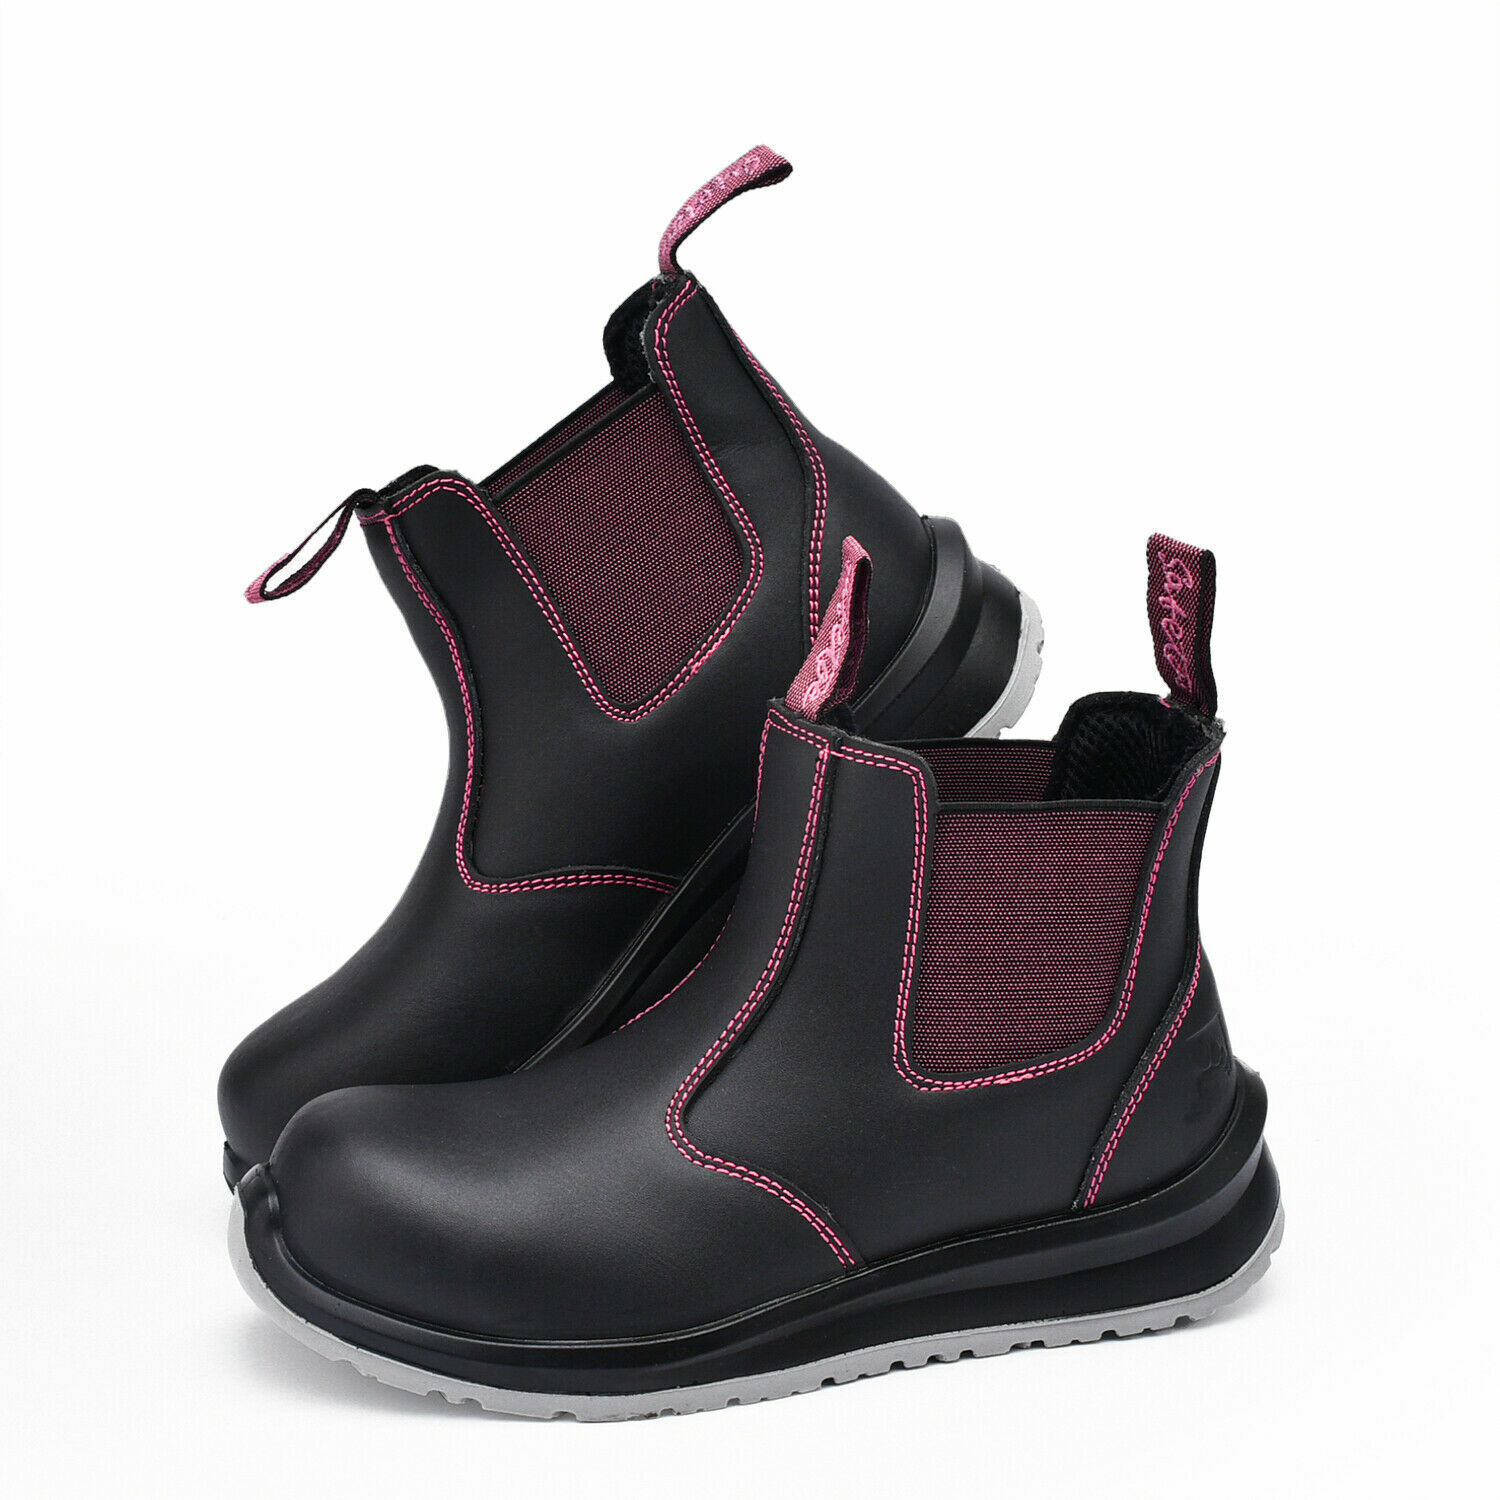 SAFETOE Women Safety Work Boots Steel Toe Shoes Cow Leather Water Resistant NEW Darmowa ogólnopolska, wysoka jakość